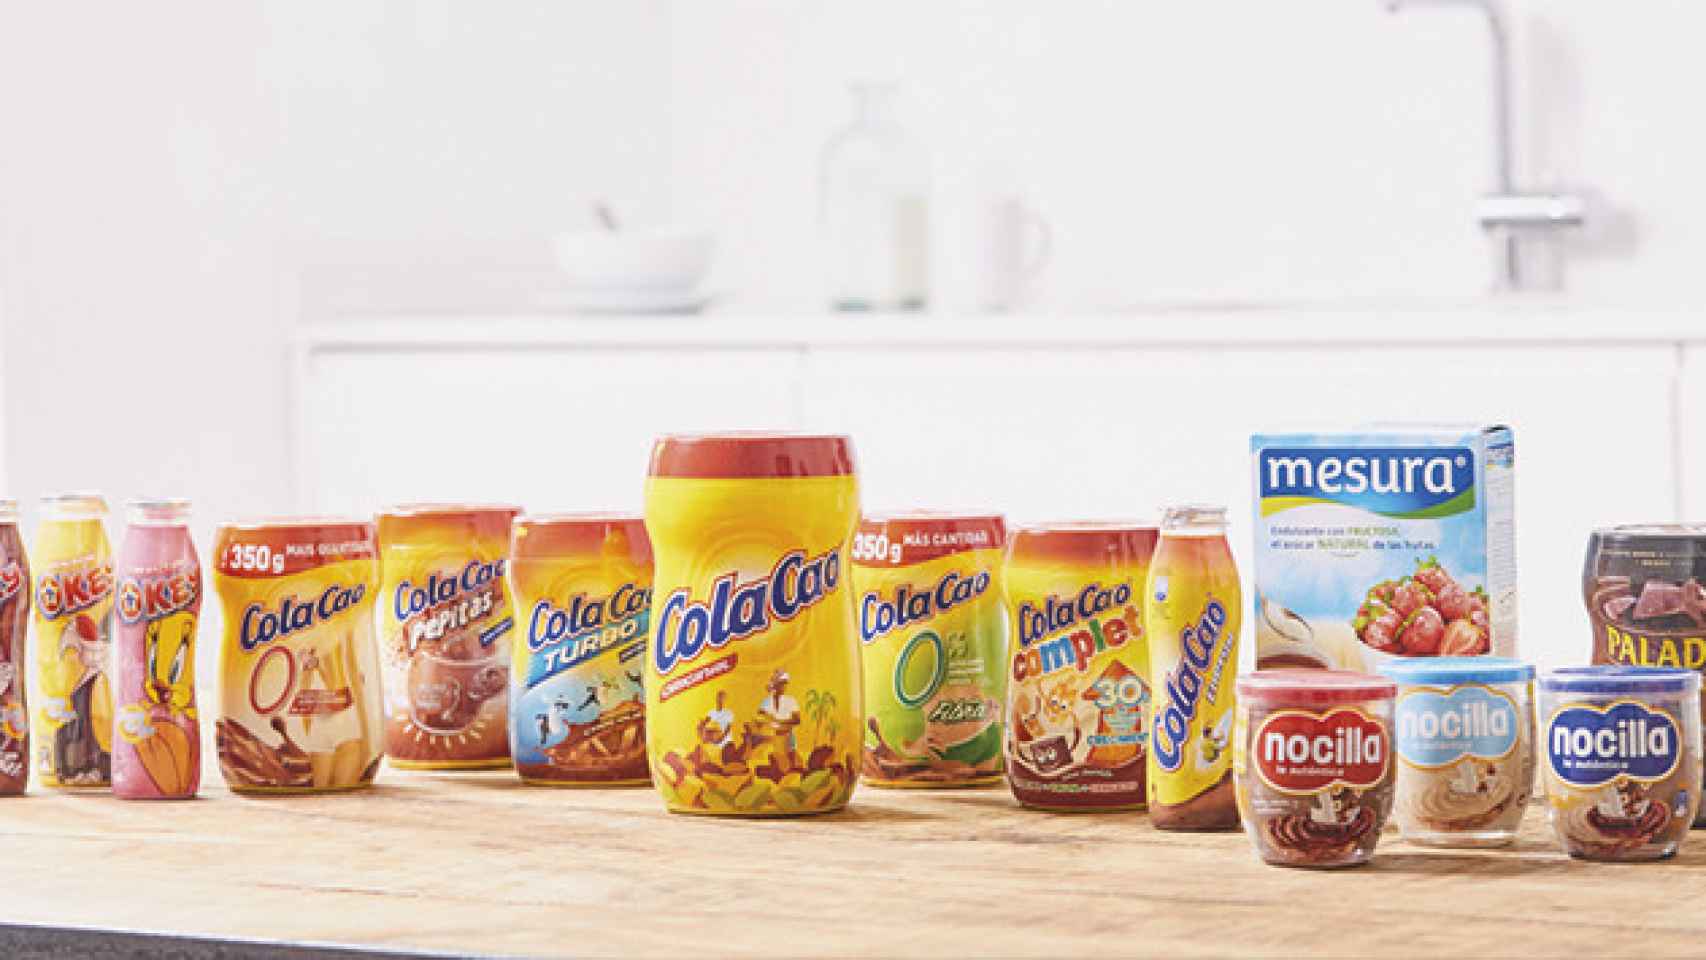 Algunos de los productos de Idilia Foods son Cola Cao, Nocilla, Paladin y Okey / IDILIA